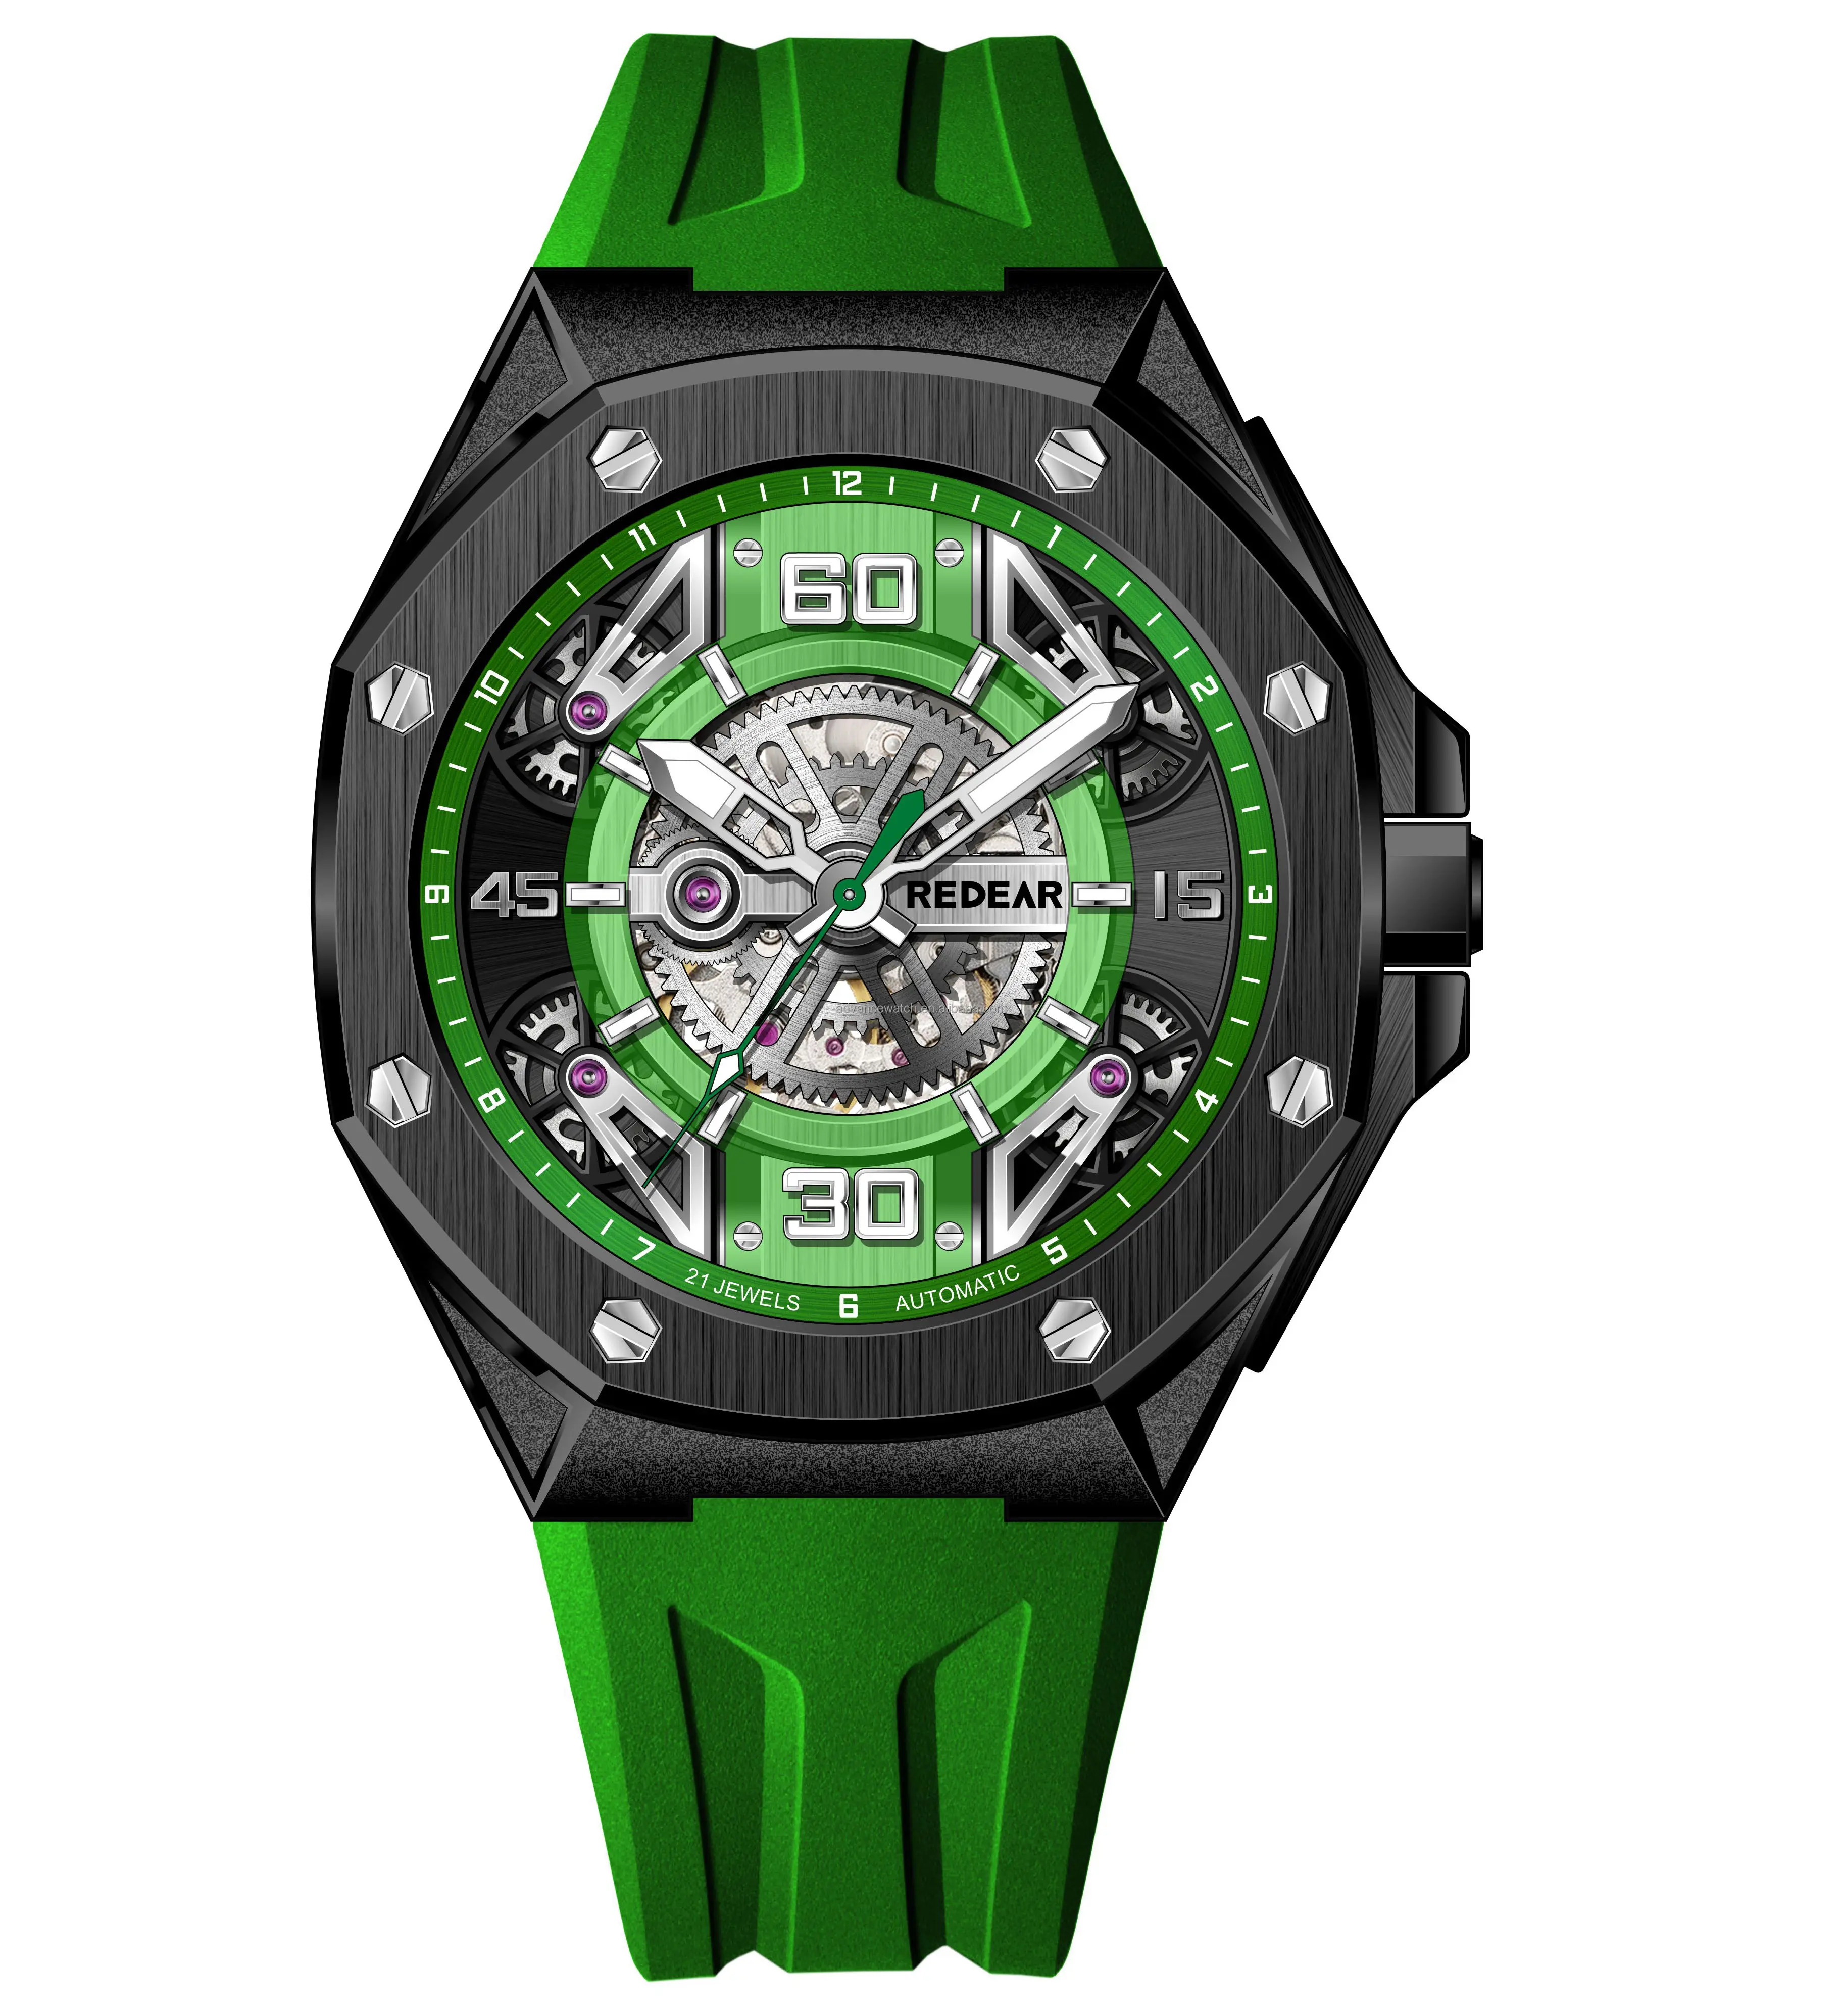 Shenzhen Horloge Fabriek Direct Beste Prijs Met Miyota 8n24 316l Roestvrij Staal Kast Kristal Glas 10atm Fluor Rubberen Band